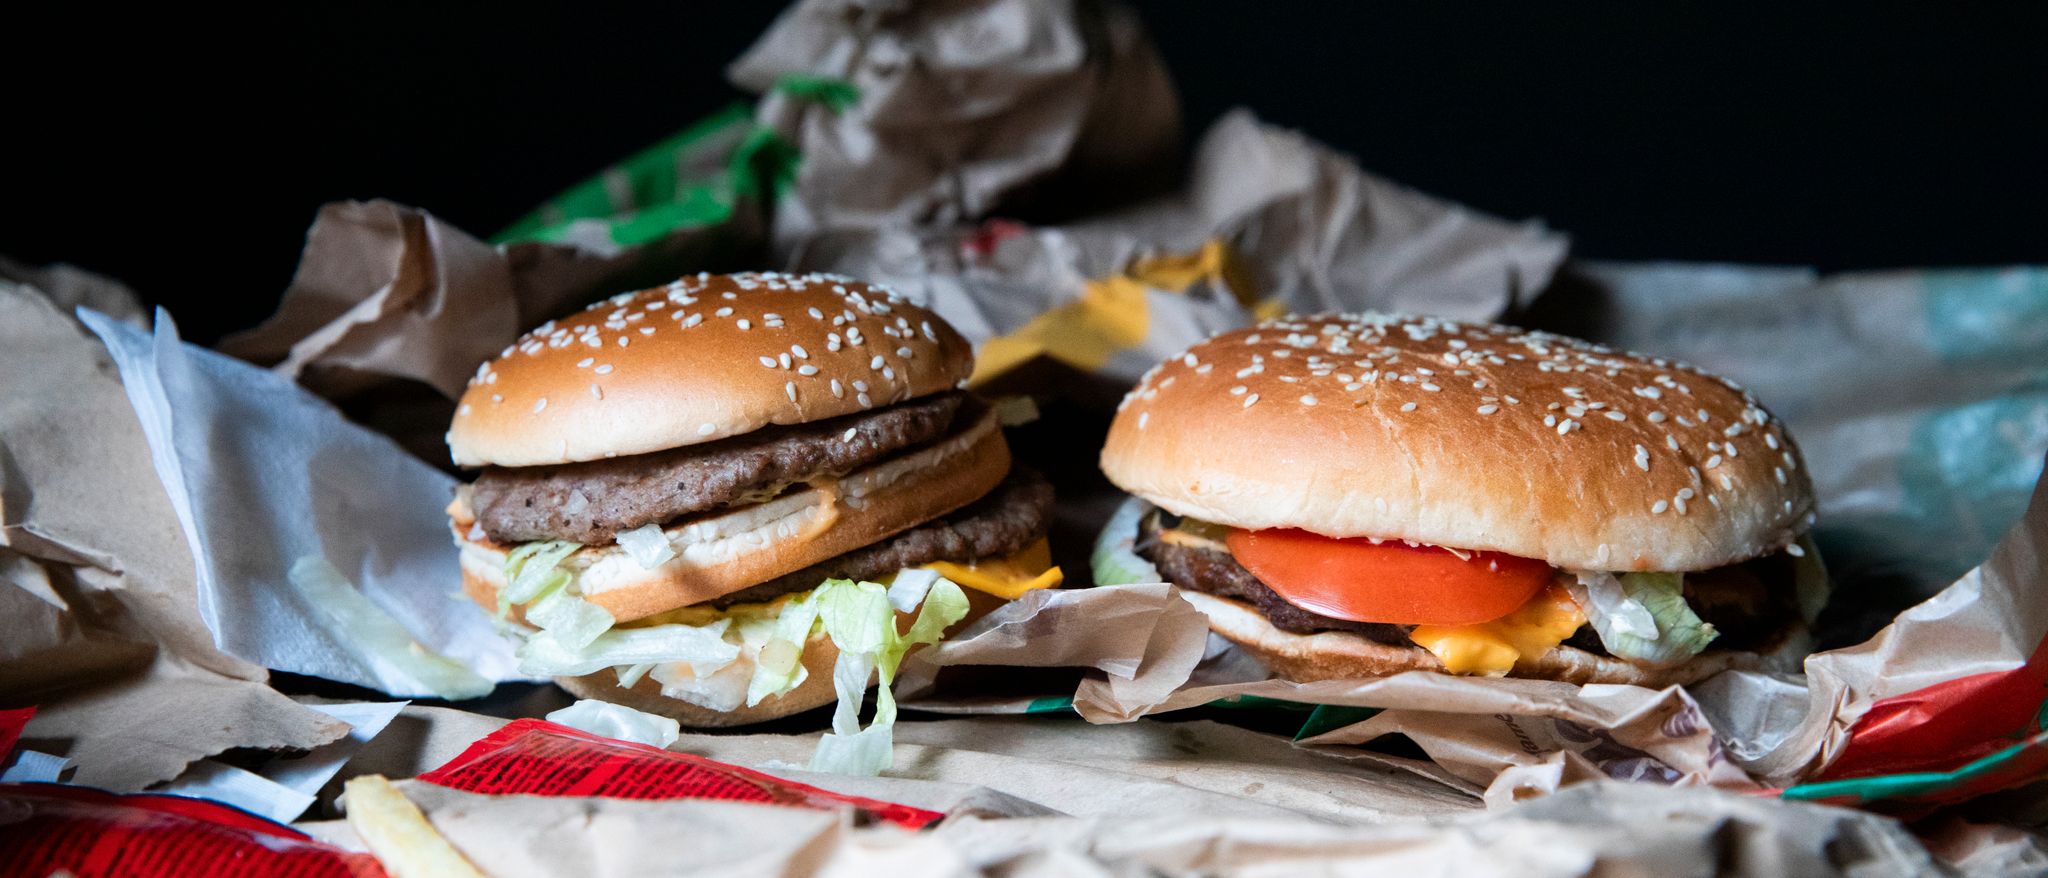 Stor duell: Hvilken er best av McDonald’s og Burger King?